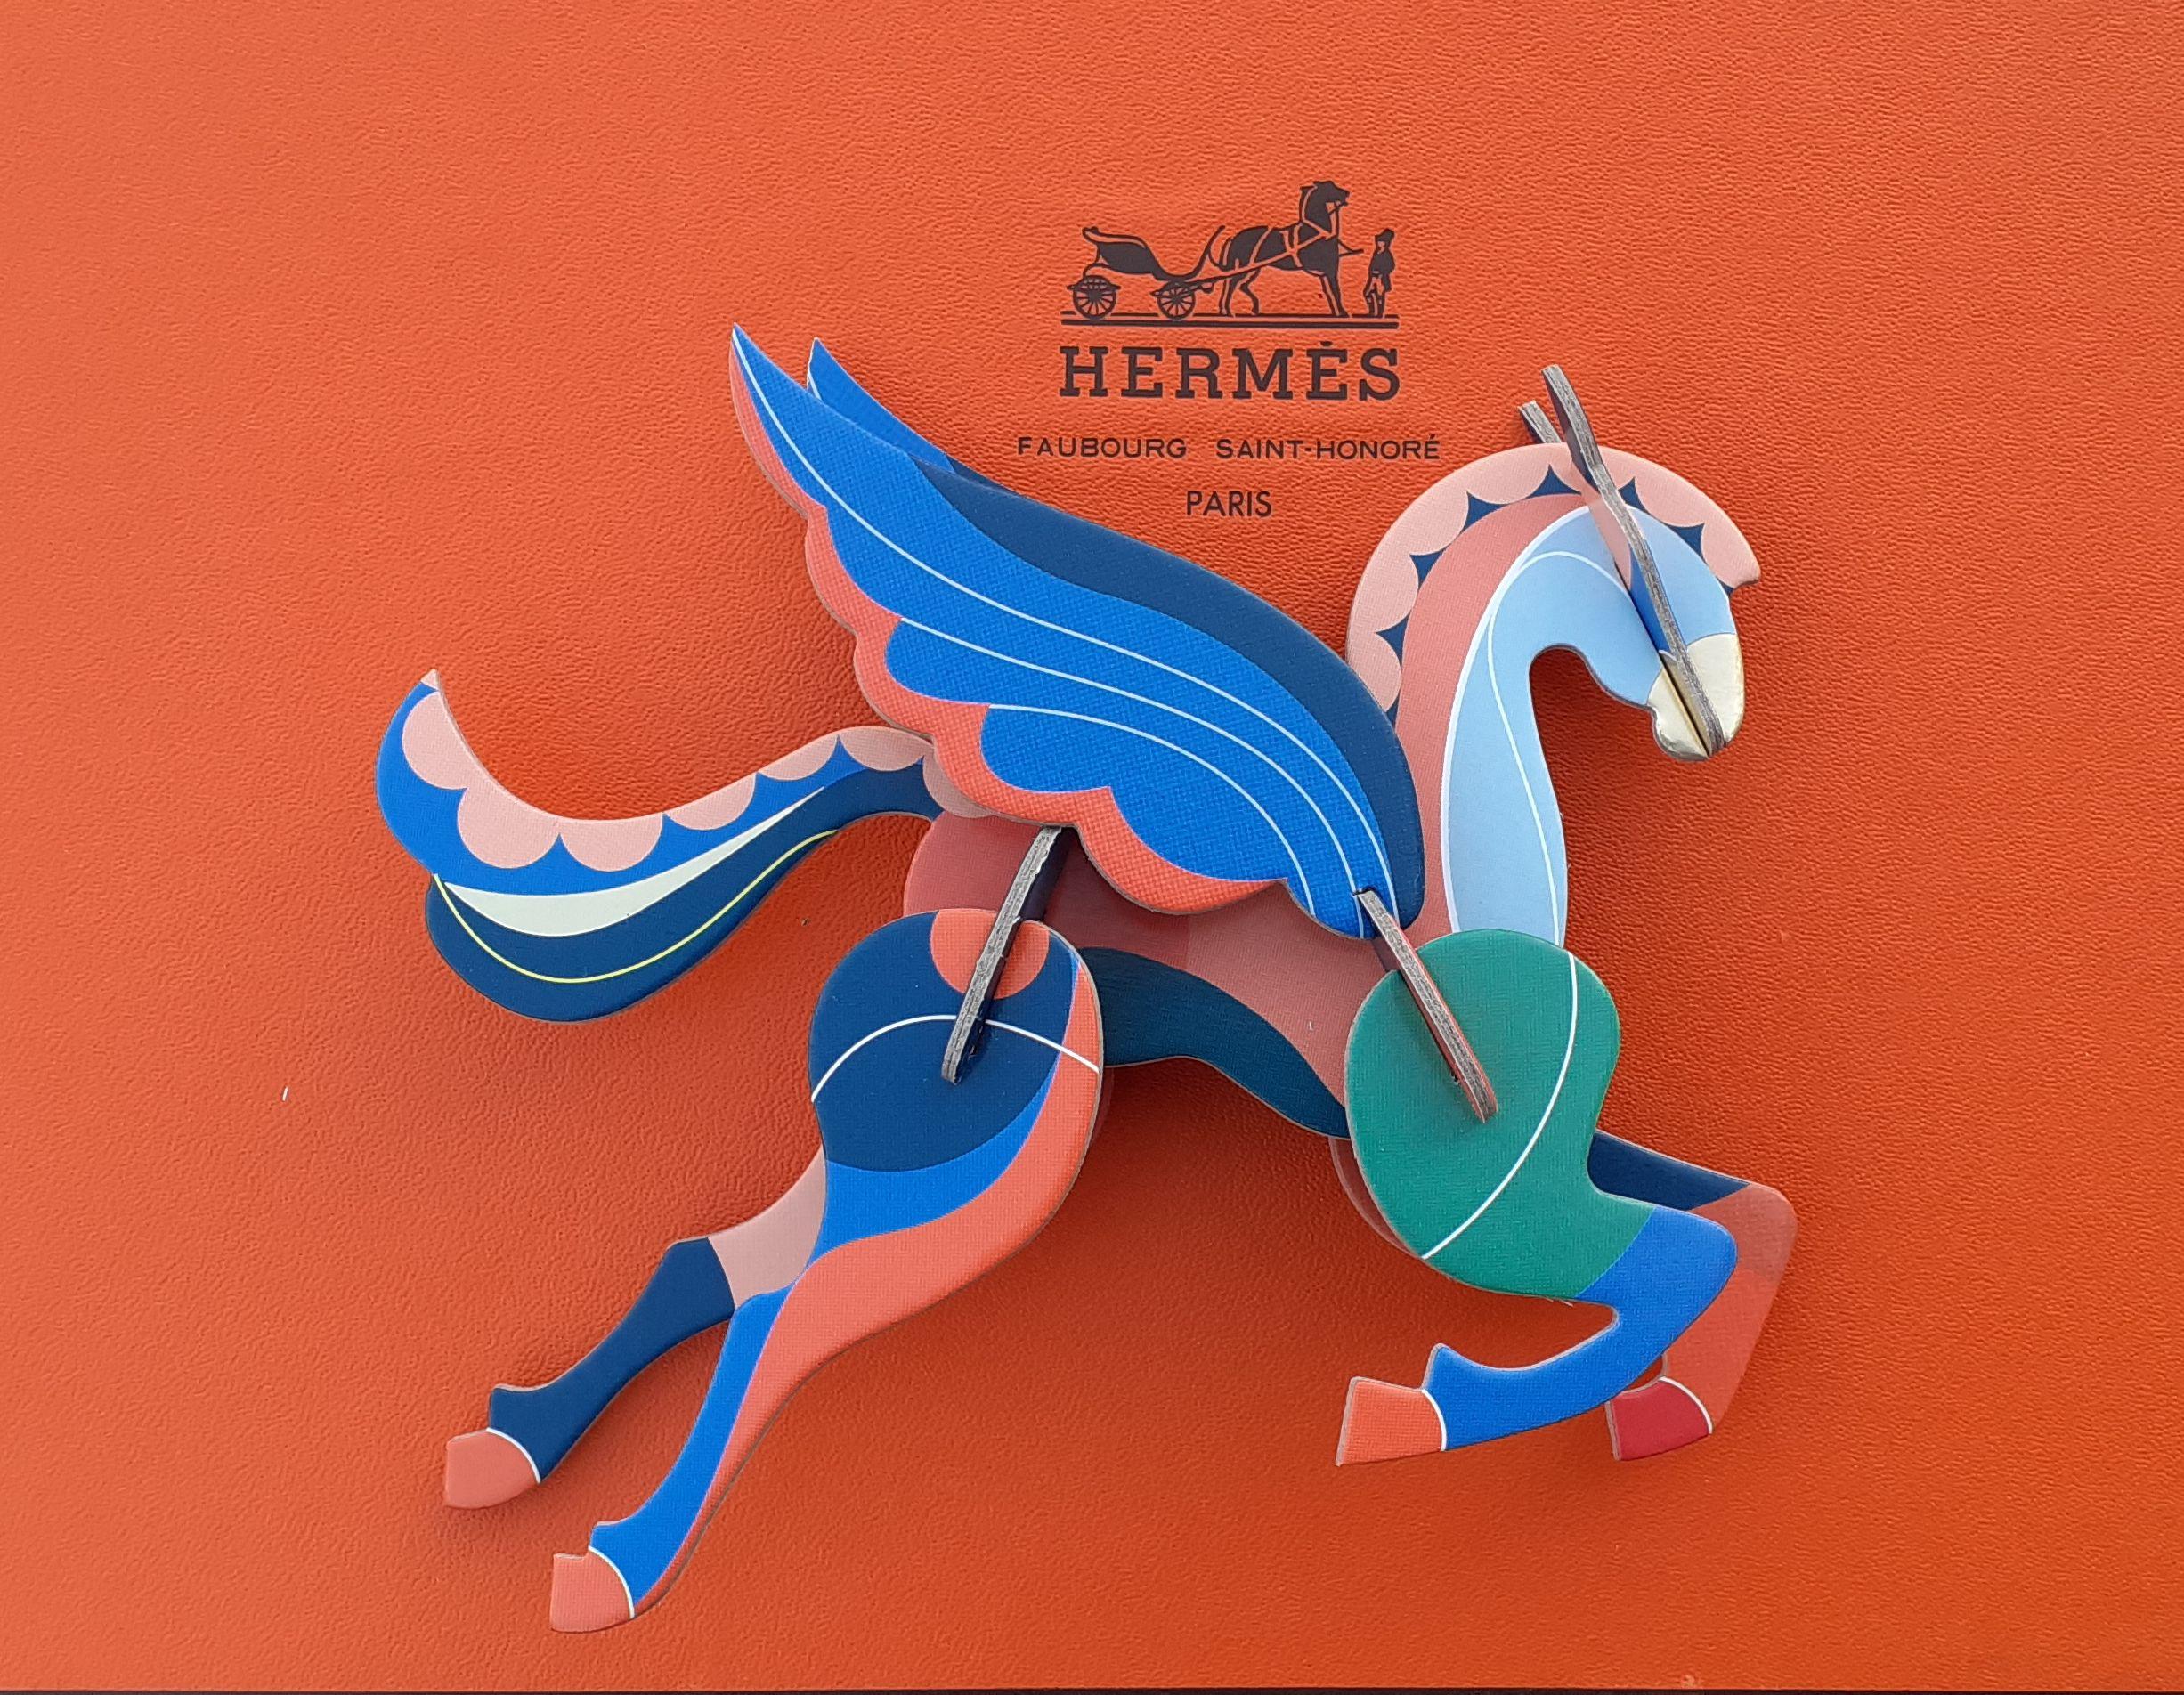 Super süßer authentischer Hermès Pegasus

Bestehend aus 10 Stück Karton zu montieren

Eine Zeichenkette erlaubt es, sie auszusetzen

Die Montageanleitung befindet sich im Inneren der Verpackung

Farbvarianten: Blau, Rosa, Grün, Gold

Maße (rund): am